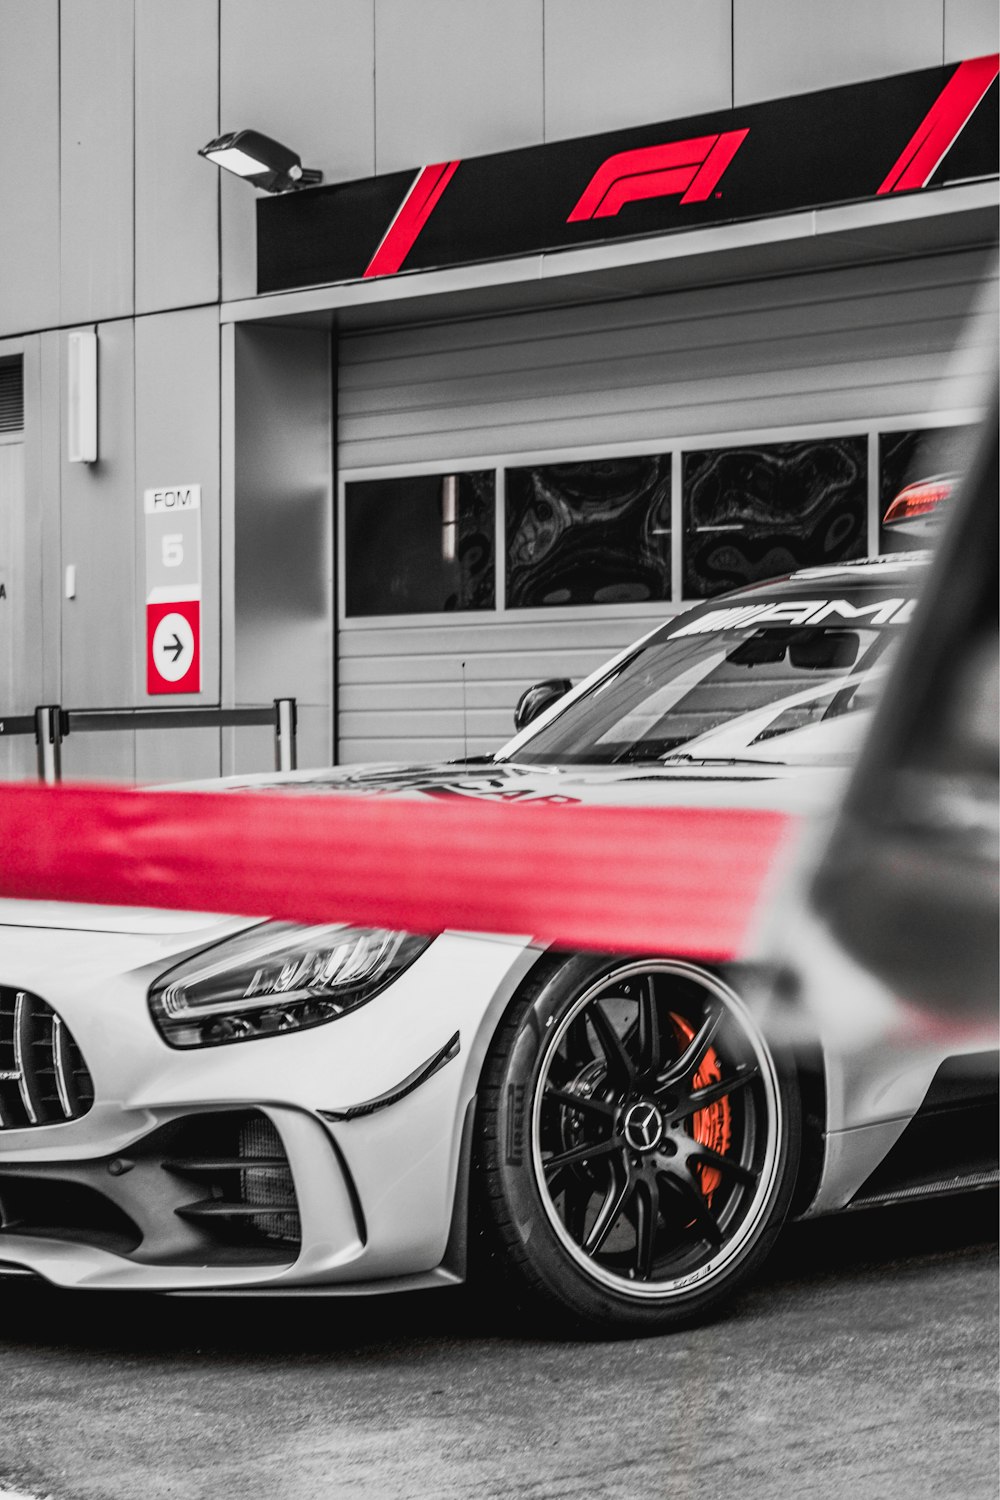 Auto sportiva rossa e bianca in fotografia in scala di grigi